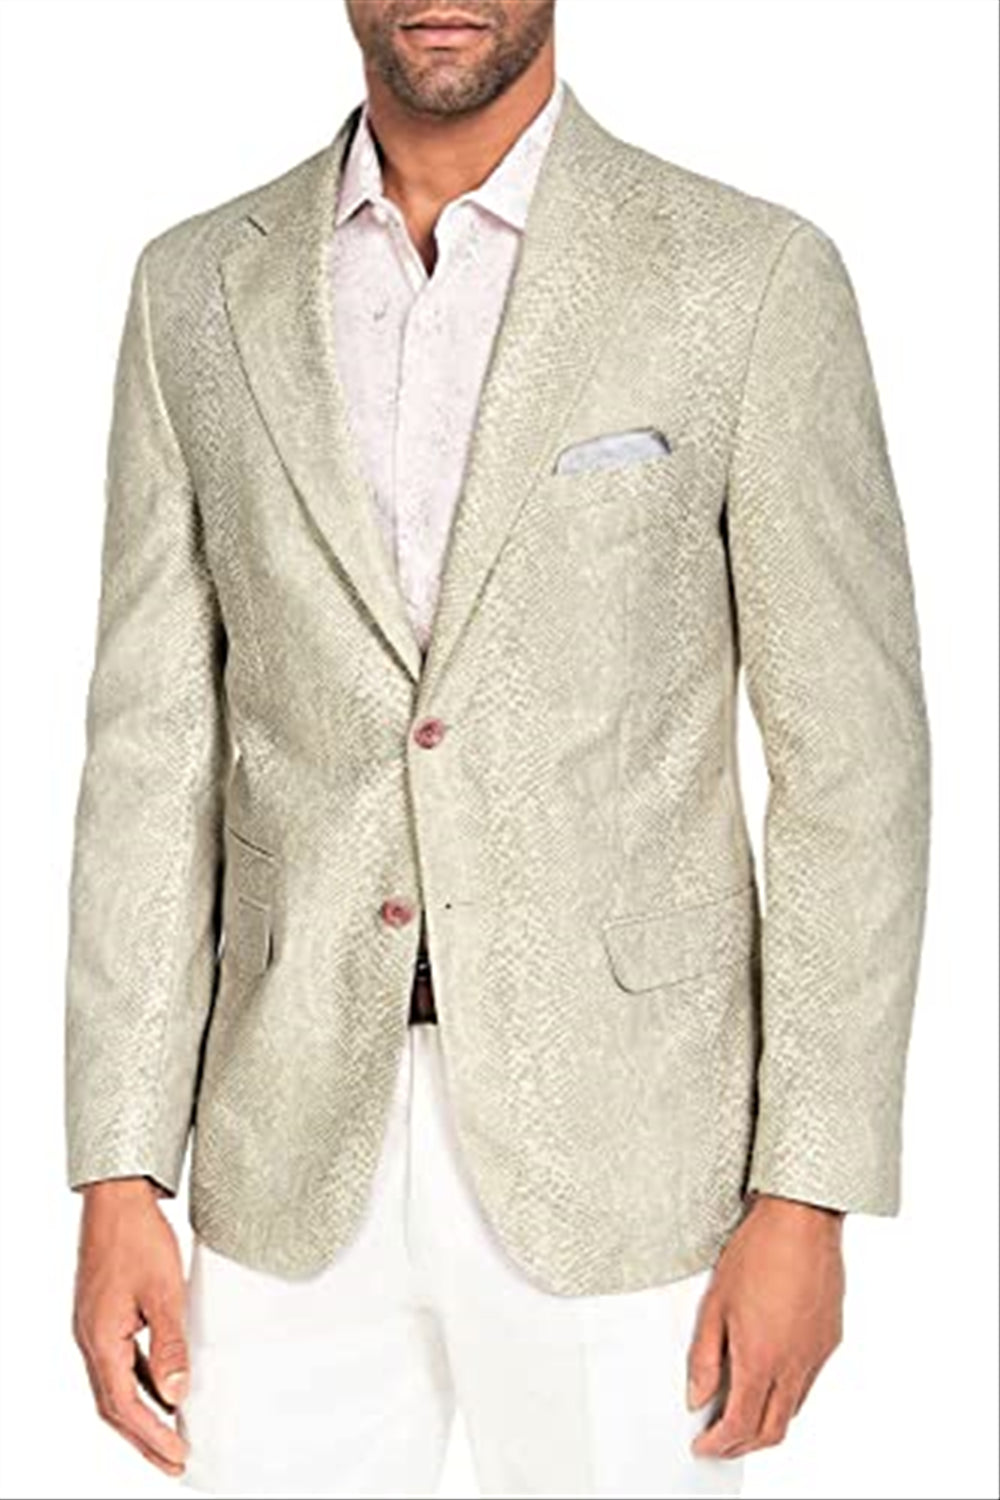 Tallia Men's Reptile Print 2 Button Suit Jacket Beige Size Large